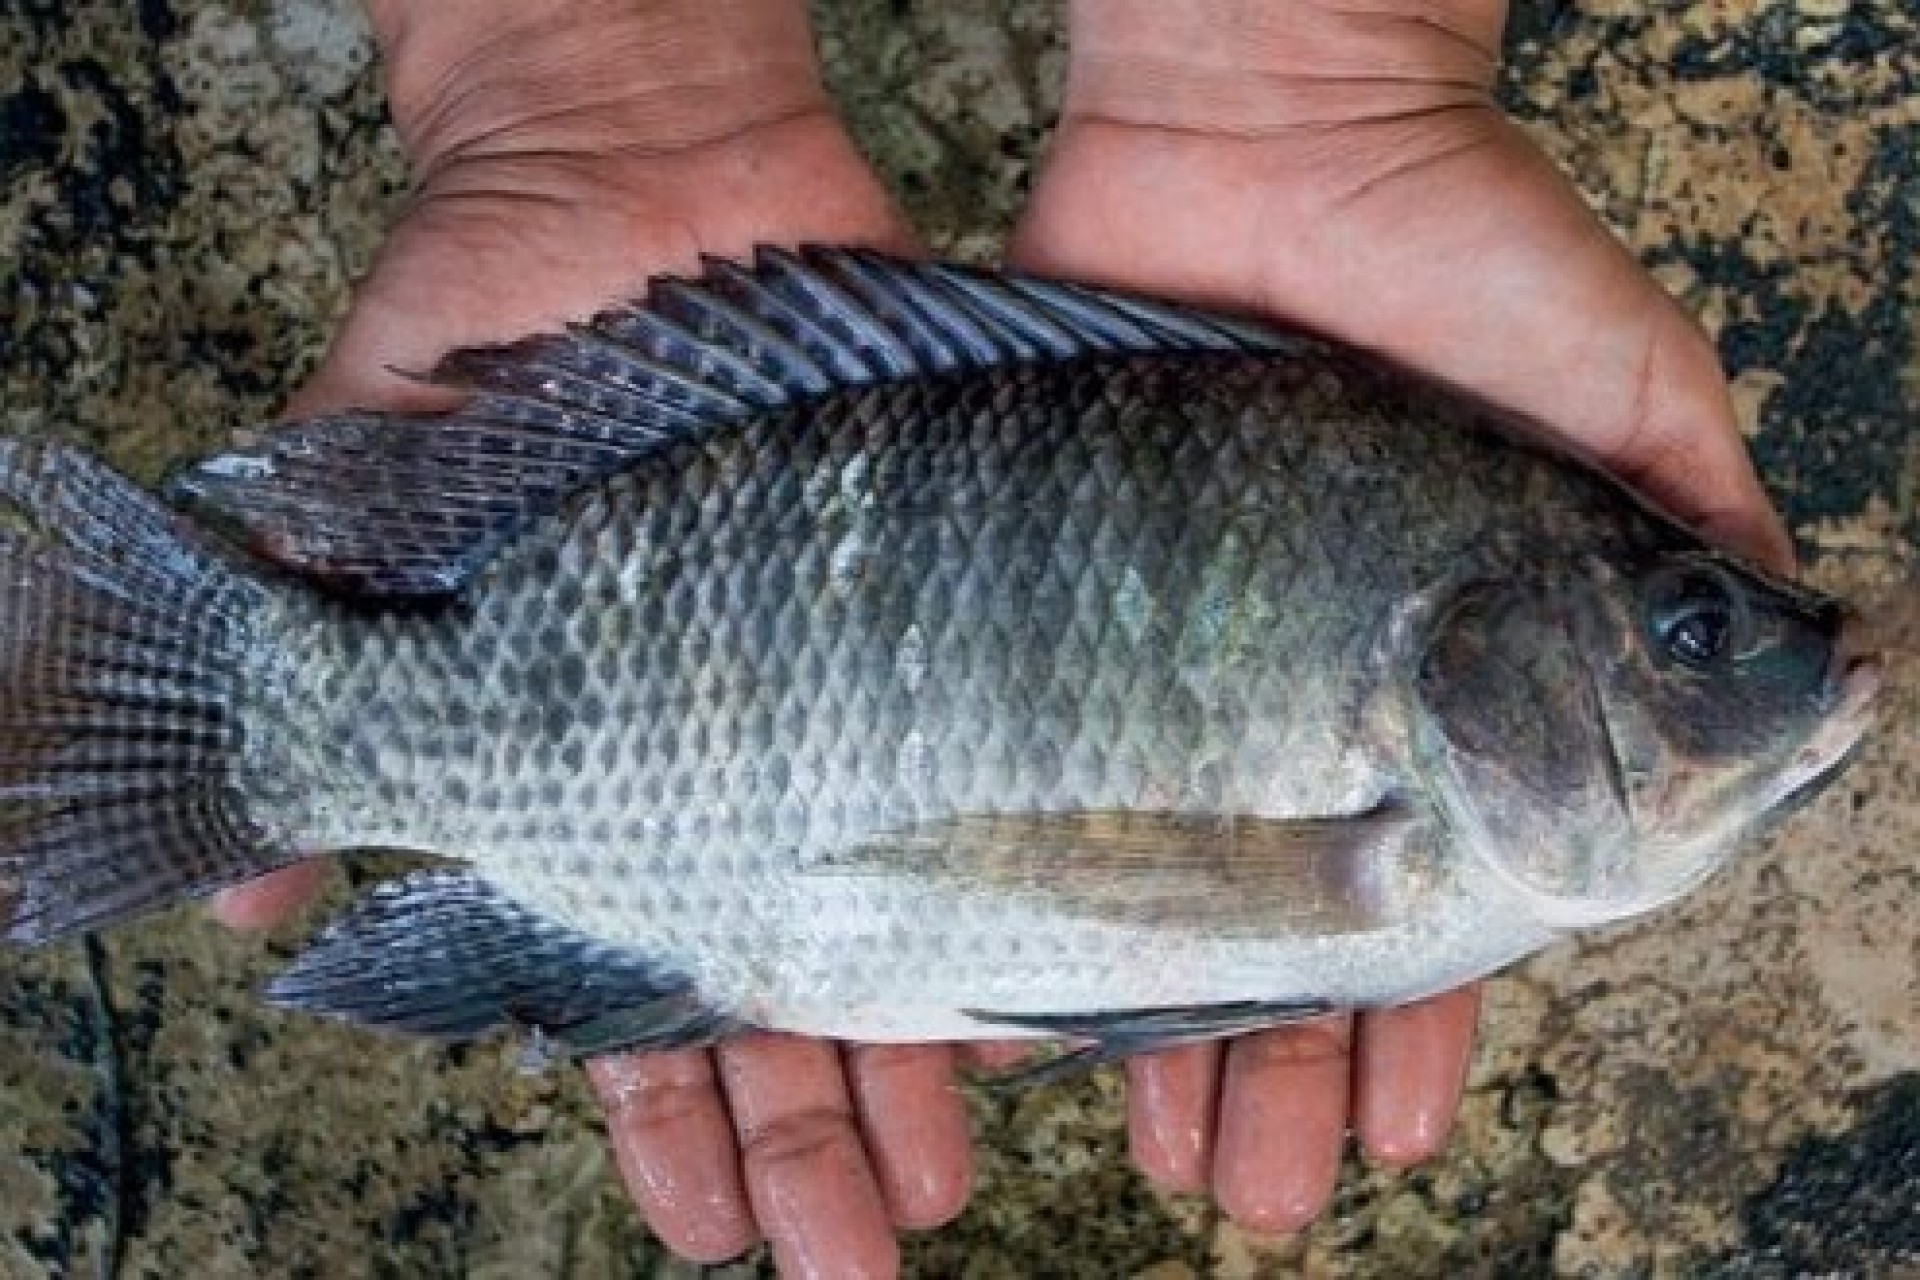 Nova lei abre caminho para Brasil quintuplicar produção de peixes de cultivo